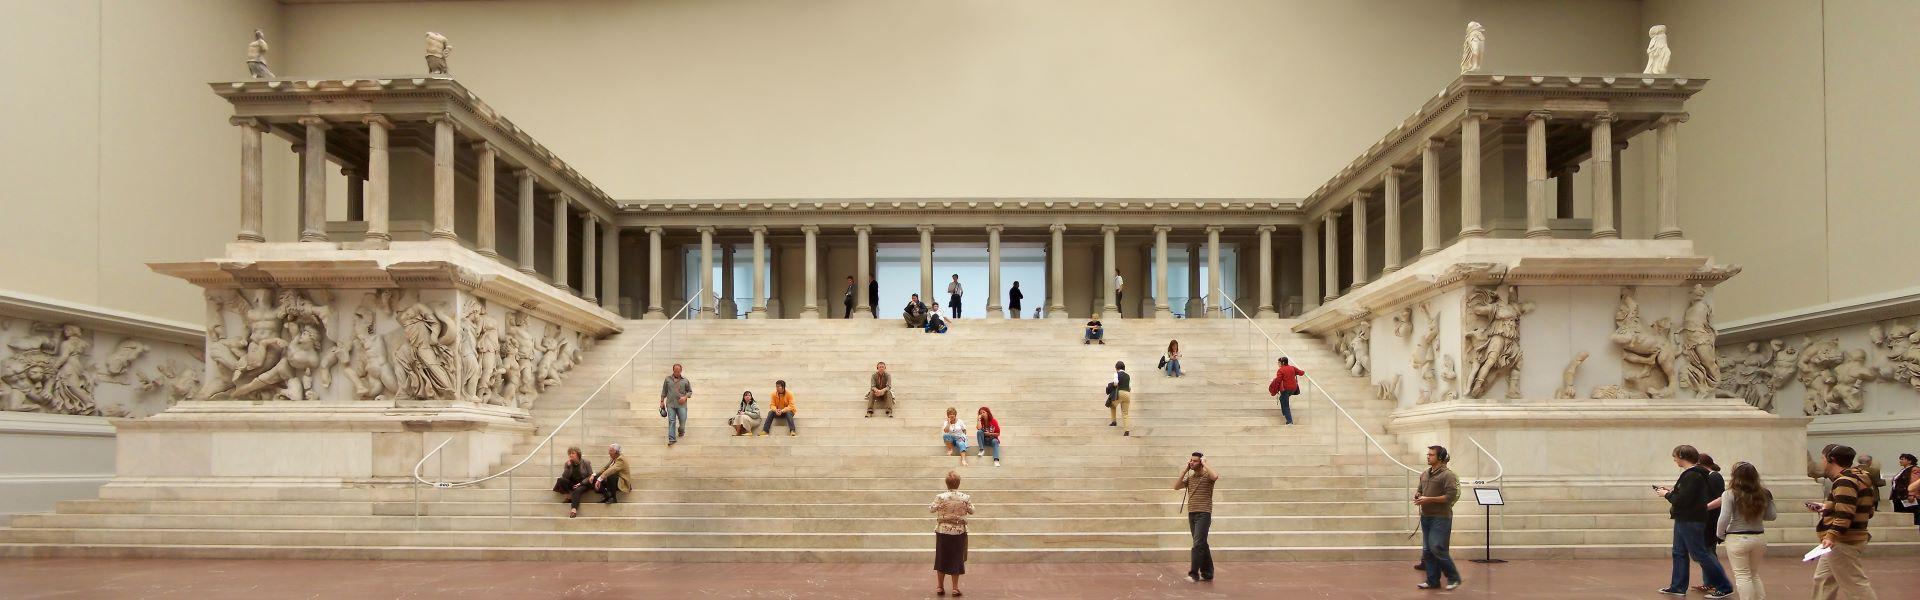 موزه پرگامون برلین  Pergamon Museum